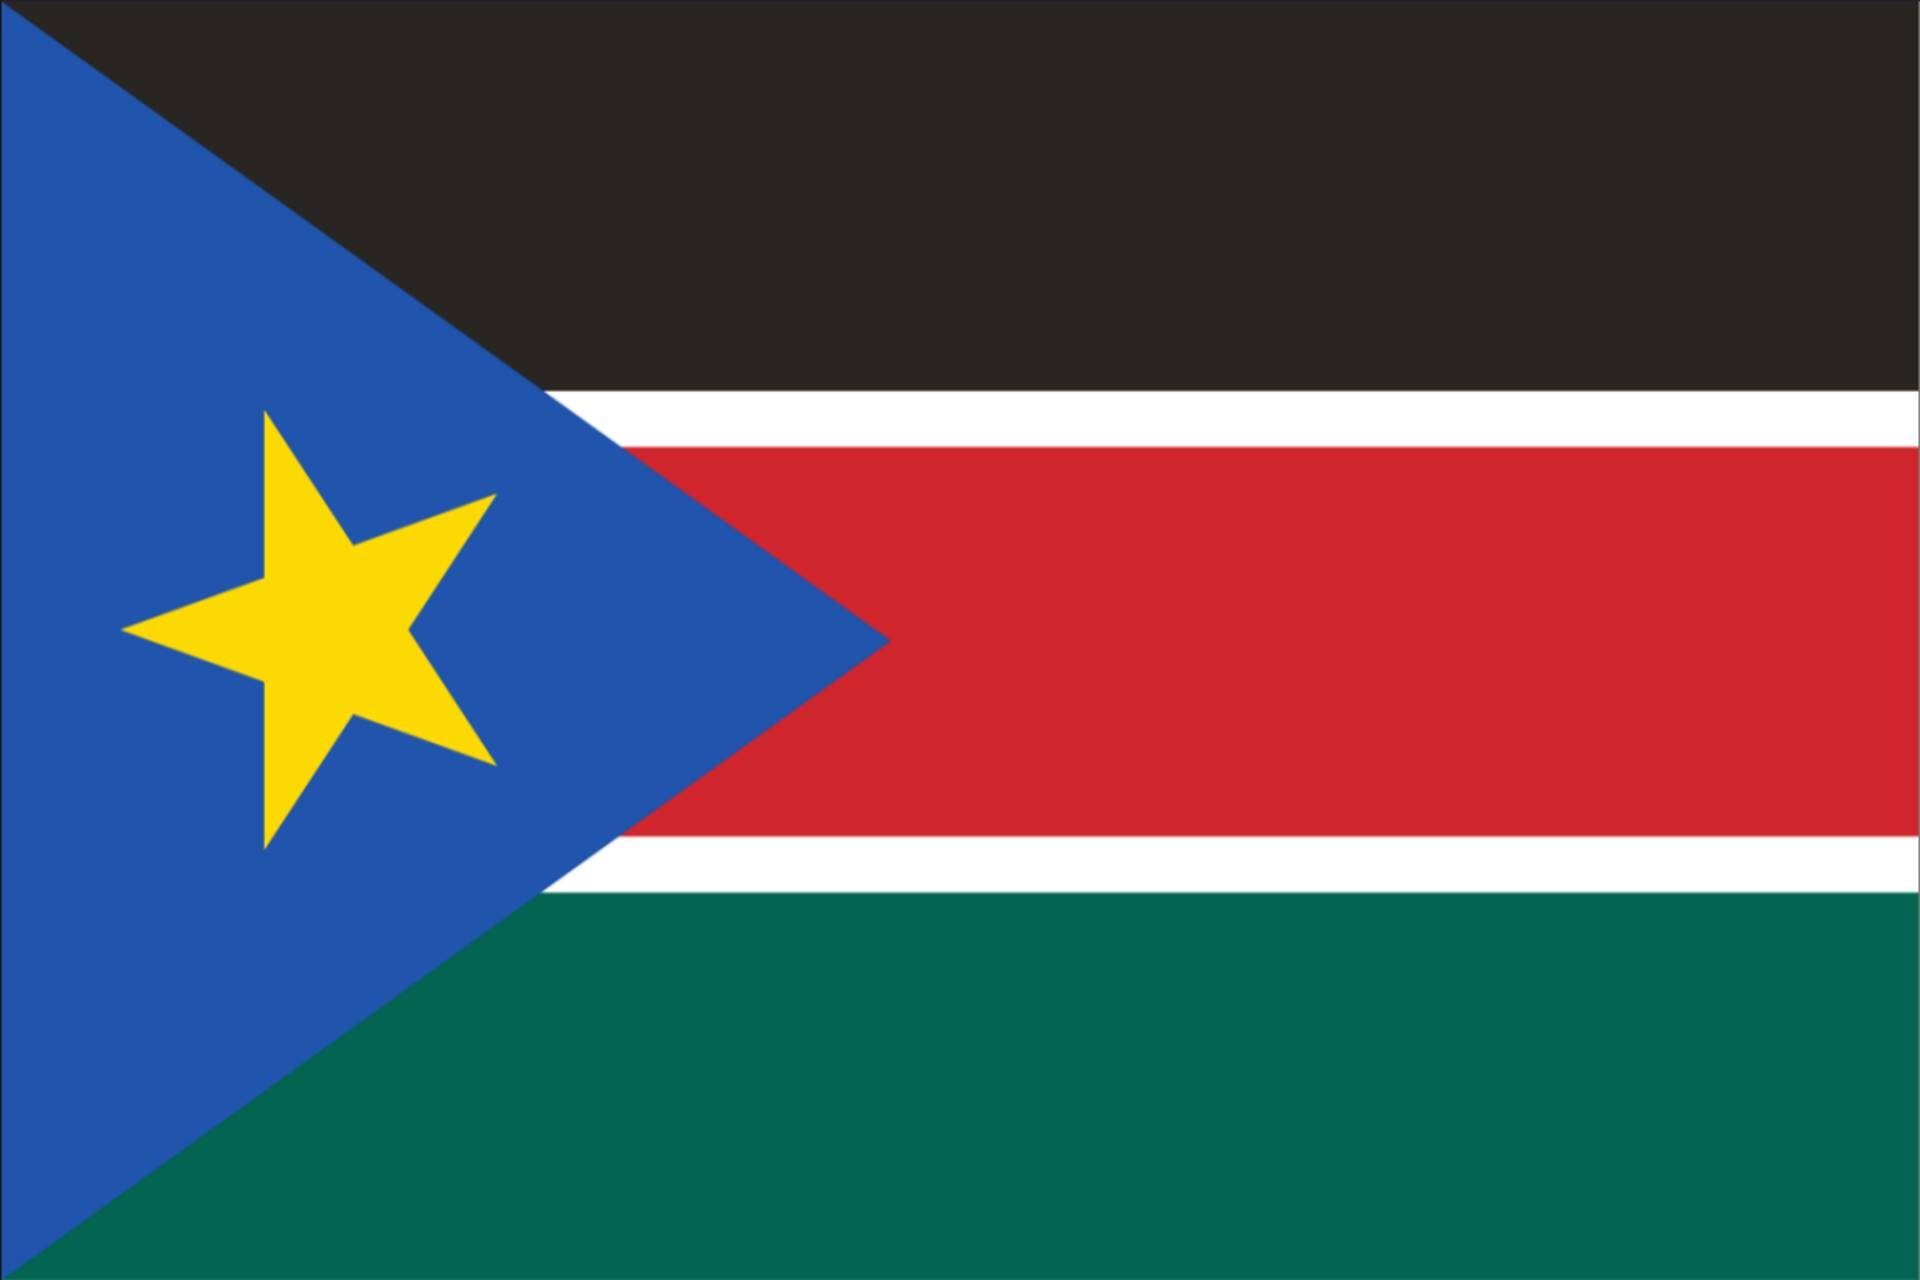 flaggenmeer Flagge Südsudan 80 g/m²